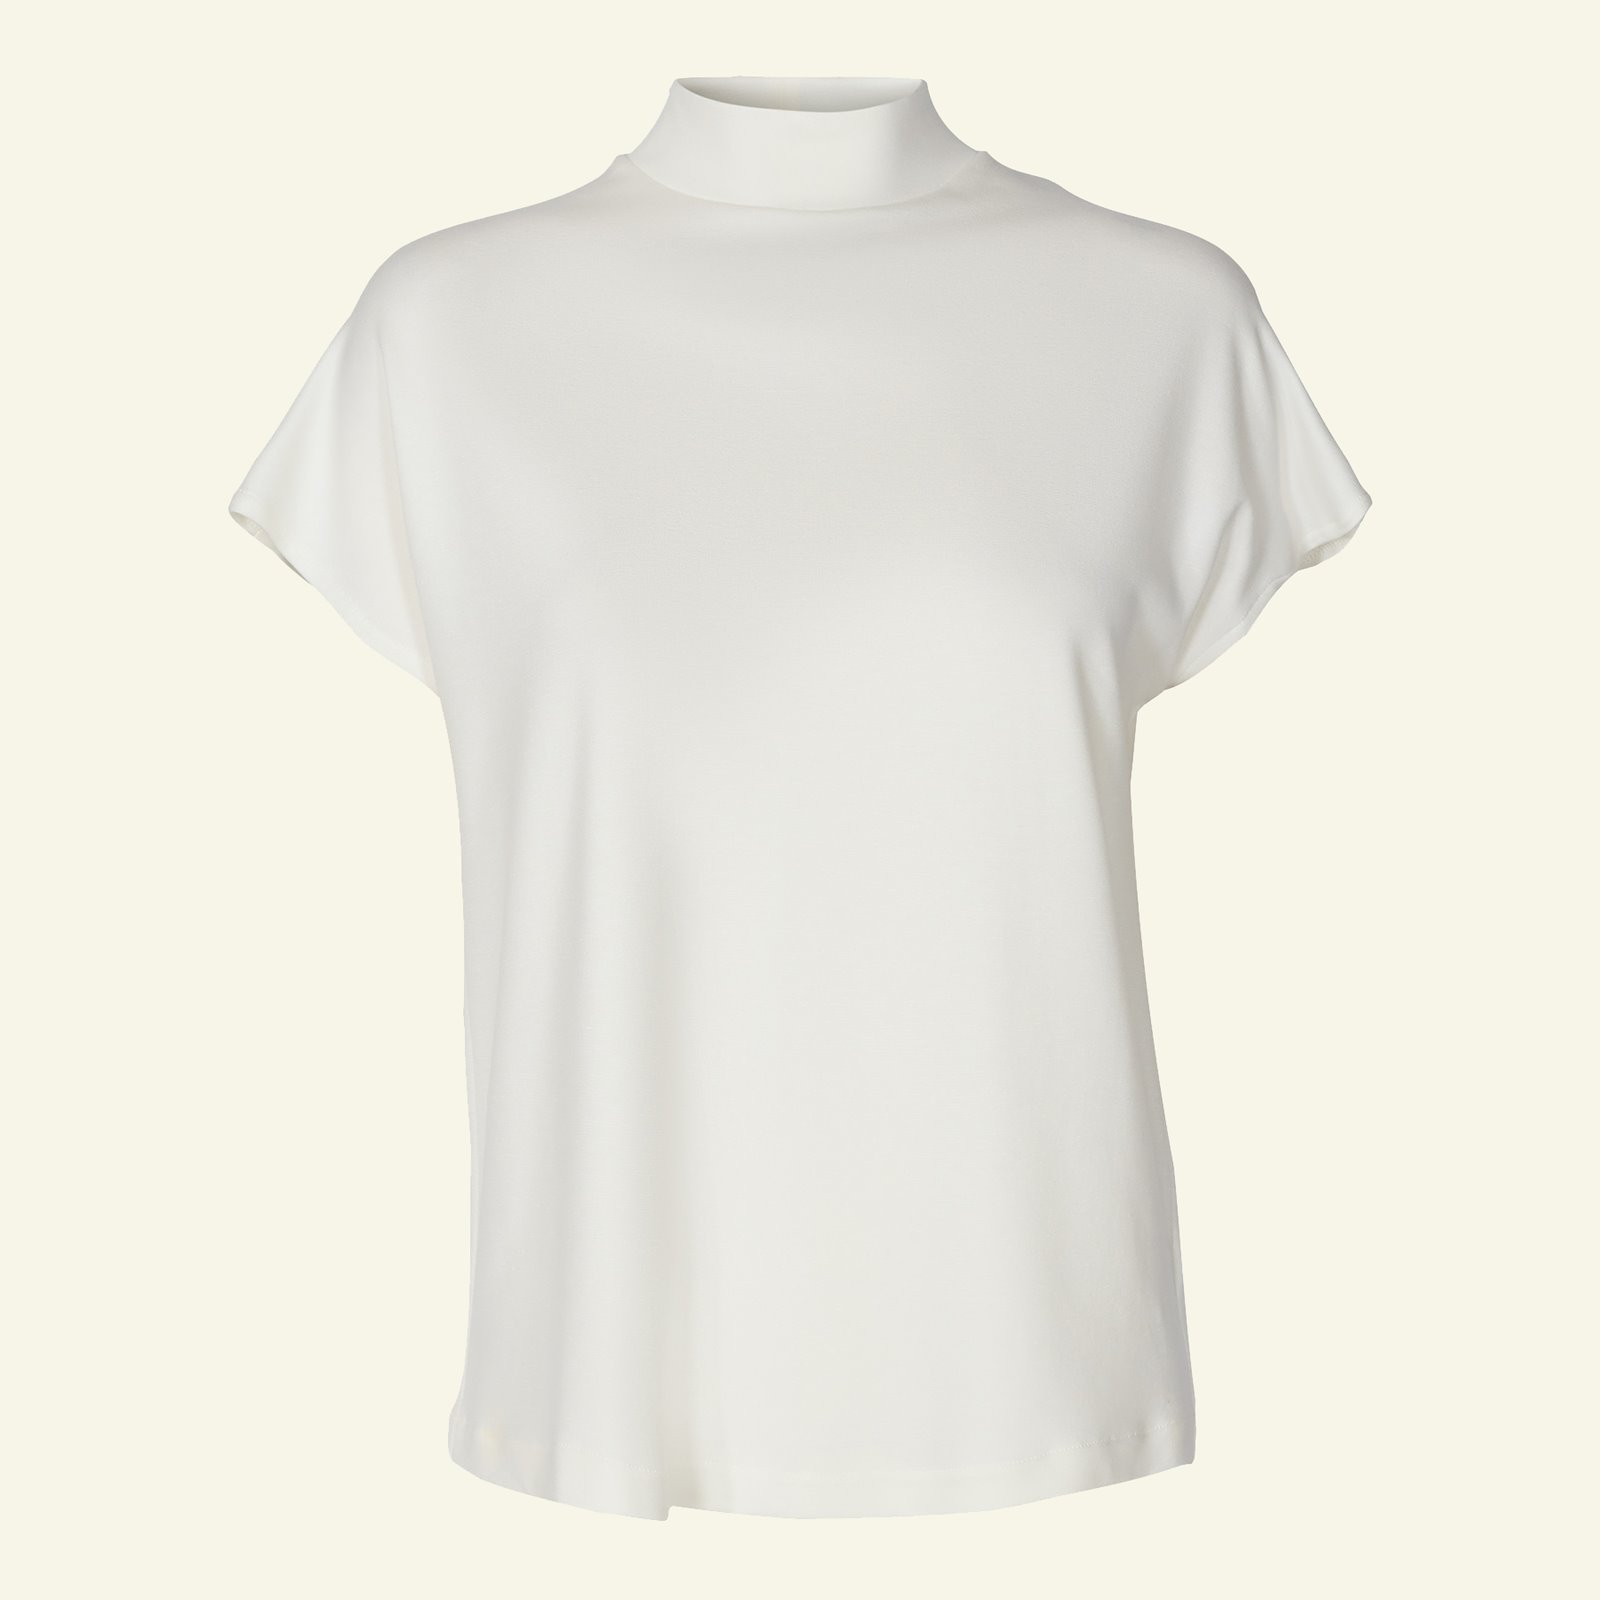 T-Shirt und Kleid, hoher Kragen, Gr. 40 p22069_270412_sskit